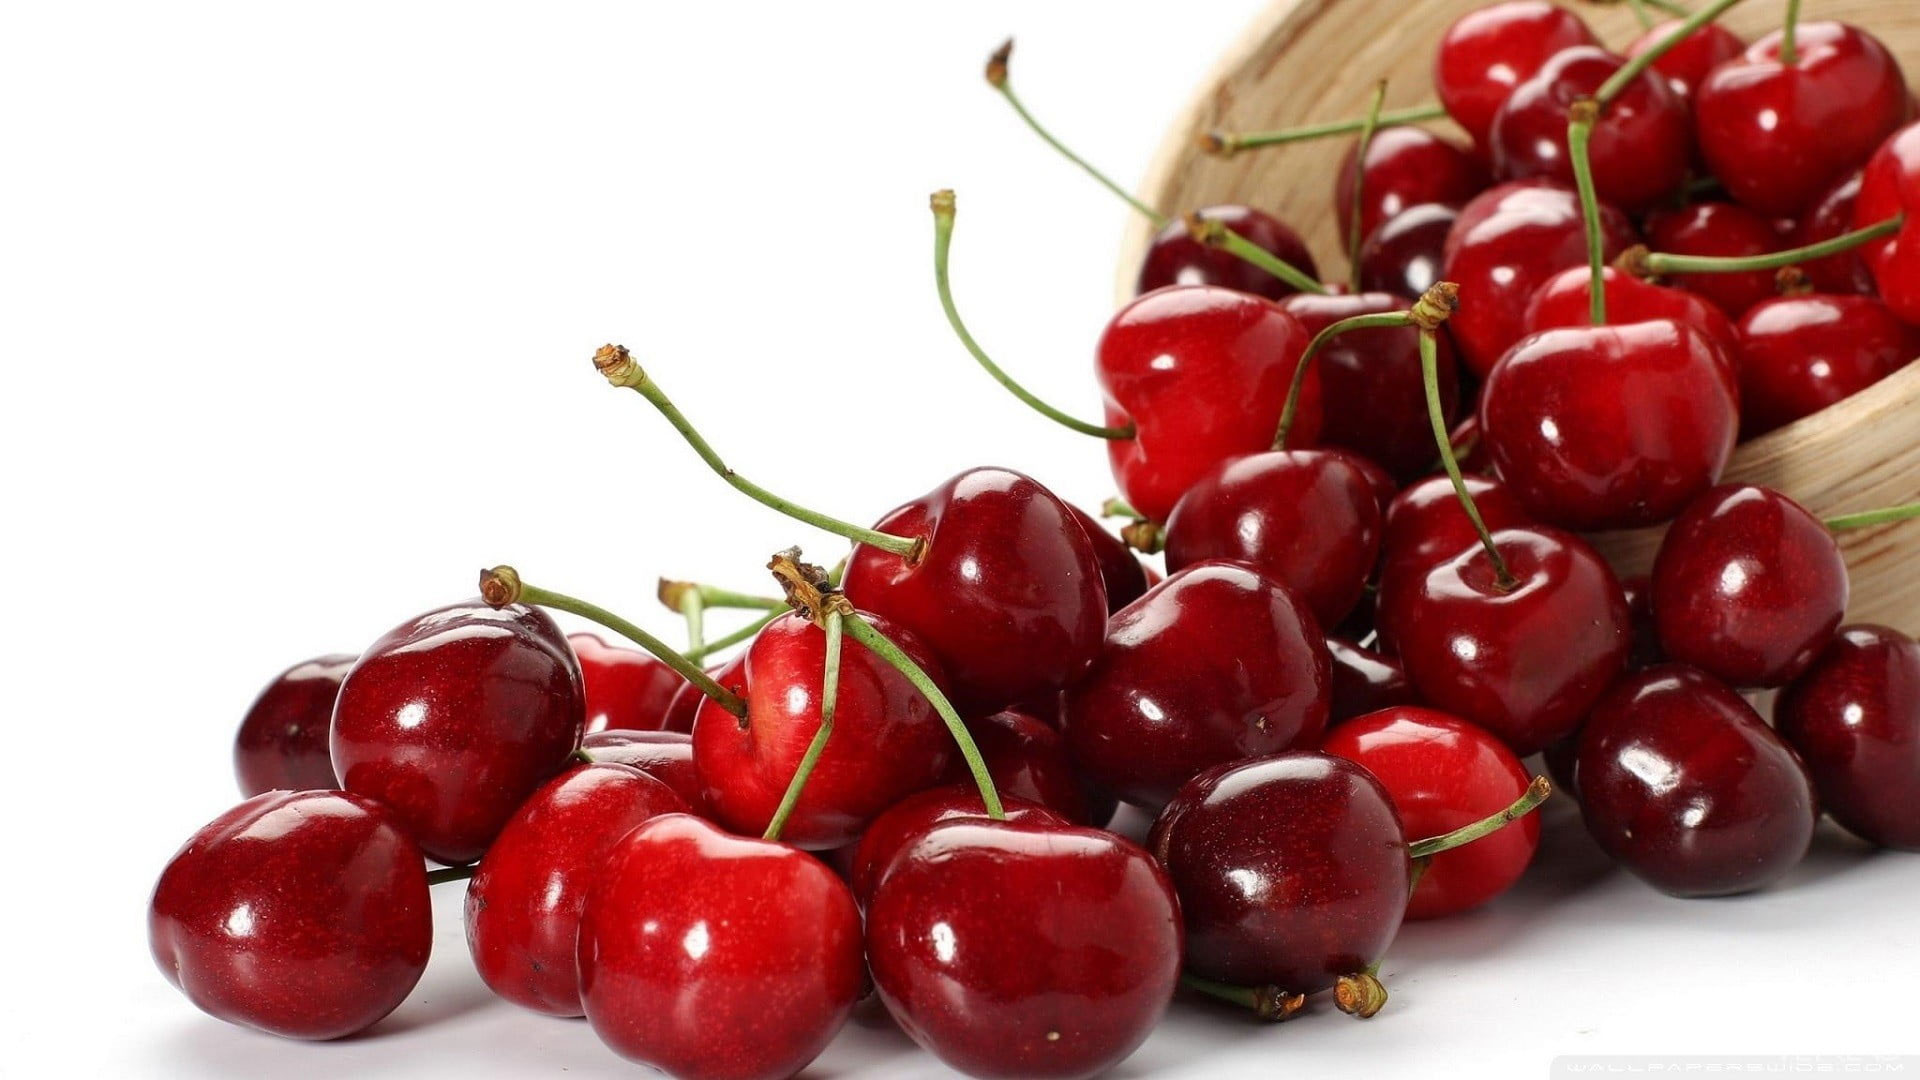 Red cherries wallpaper, food, fruit, closeup, cherries (food), food and drink